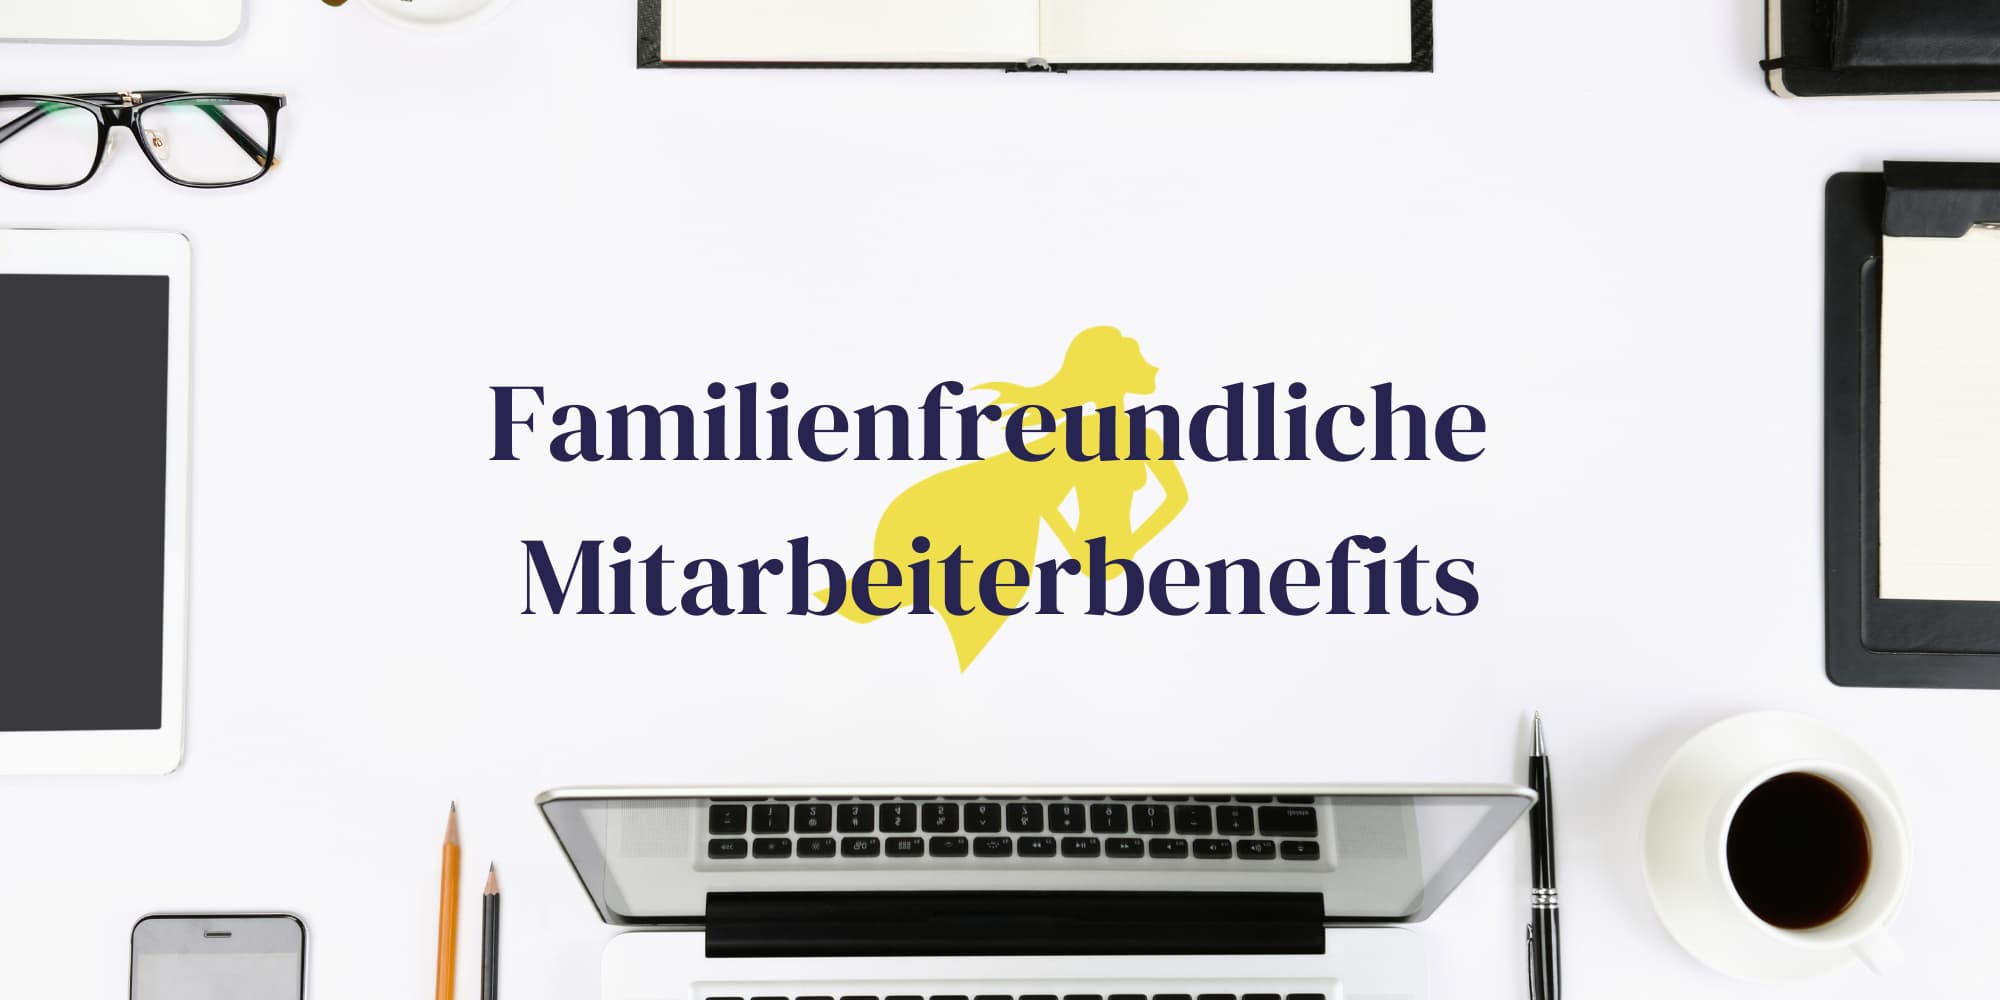 Familienfreundliche Benefits im Überblick